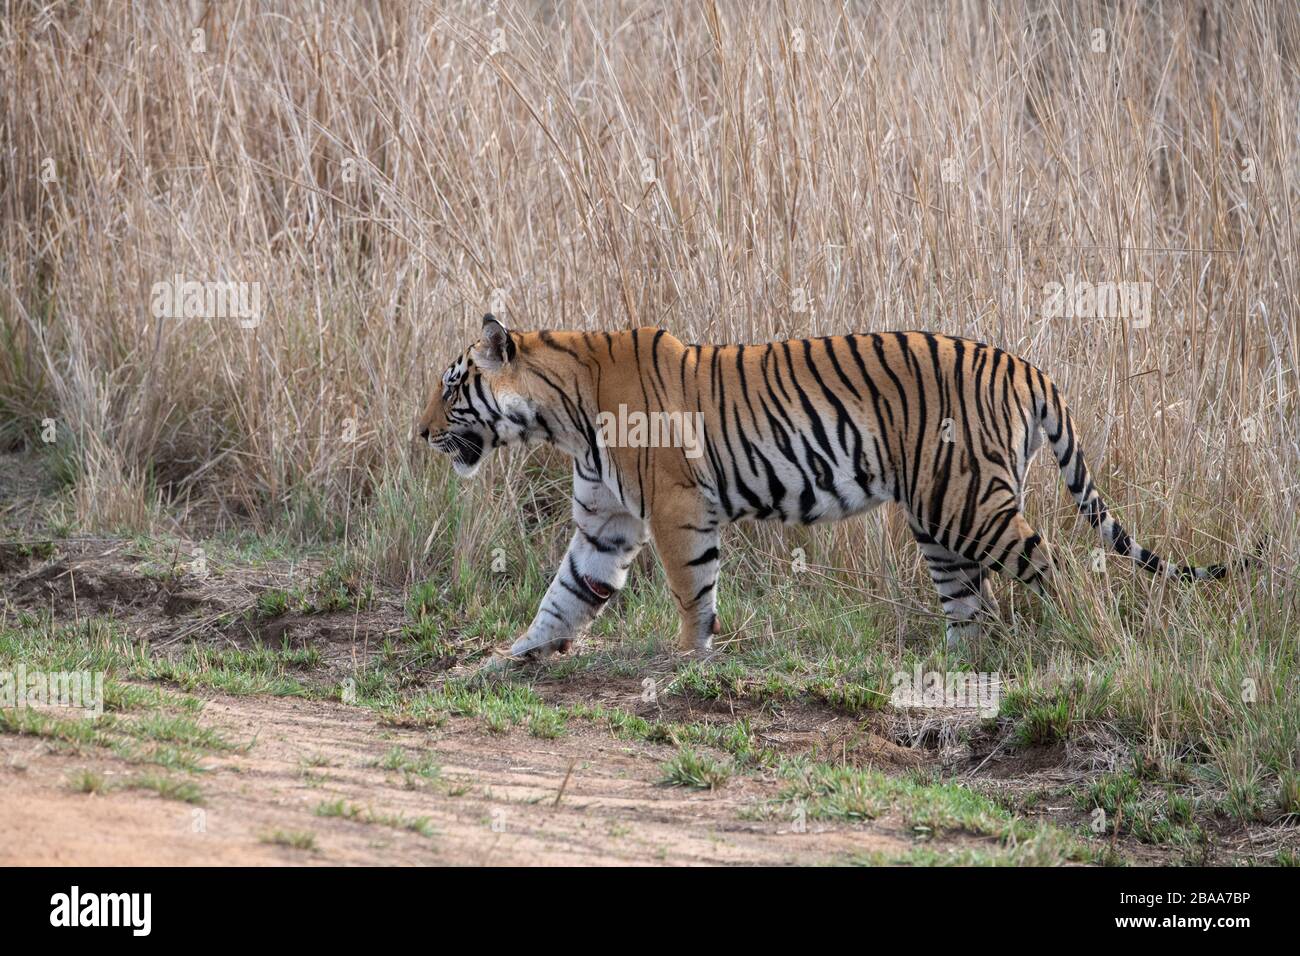 India, Madhya Pradesh, Bandhavgarh National Park. Young male Bengal tiger in tall grassland habitat. (WILD: Panthera tigris) Endangered species. Injur Stock Photo